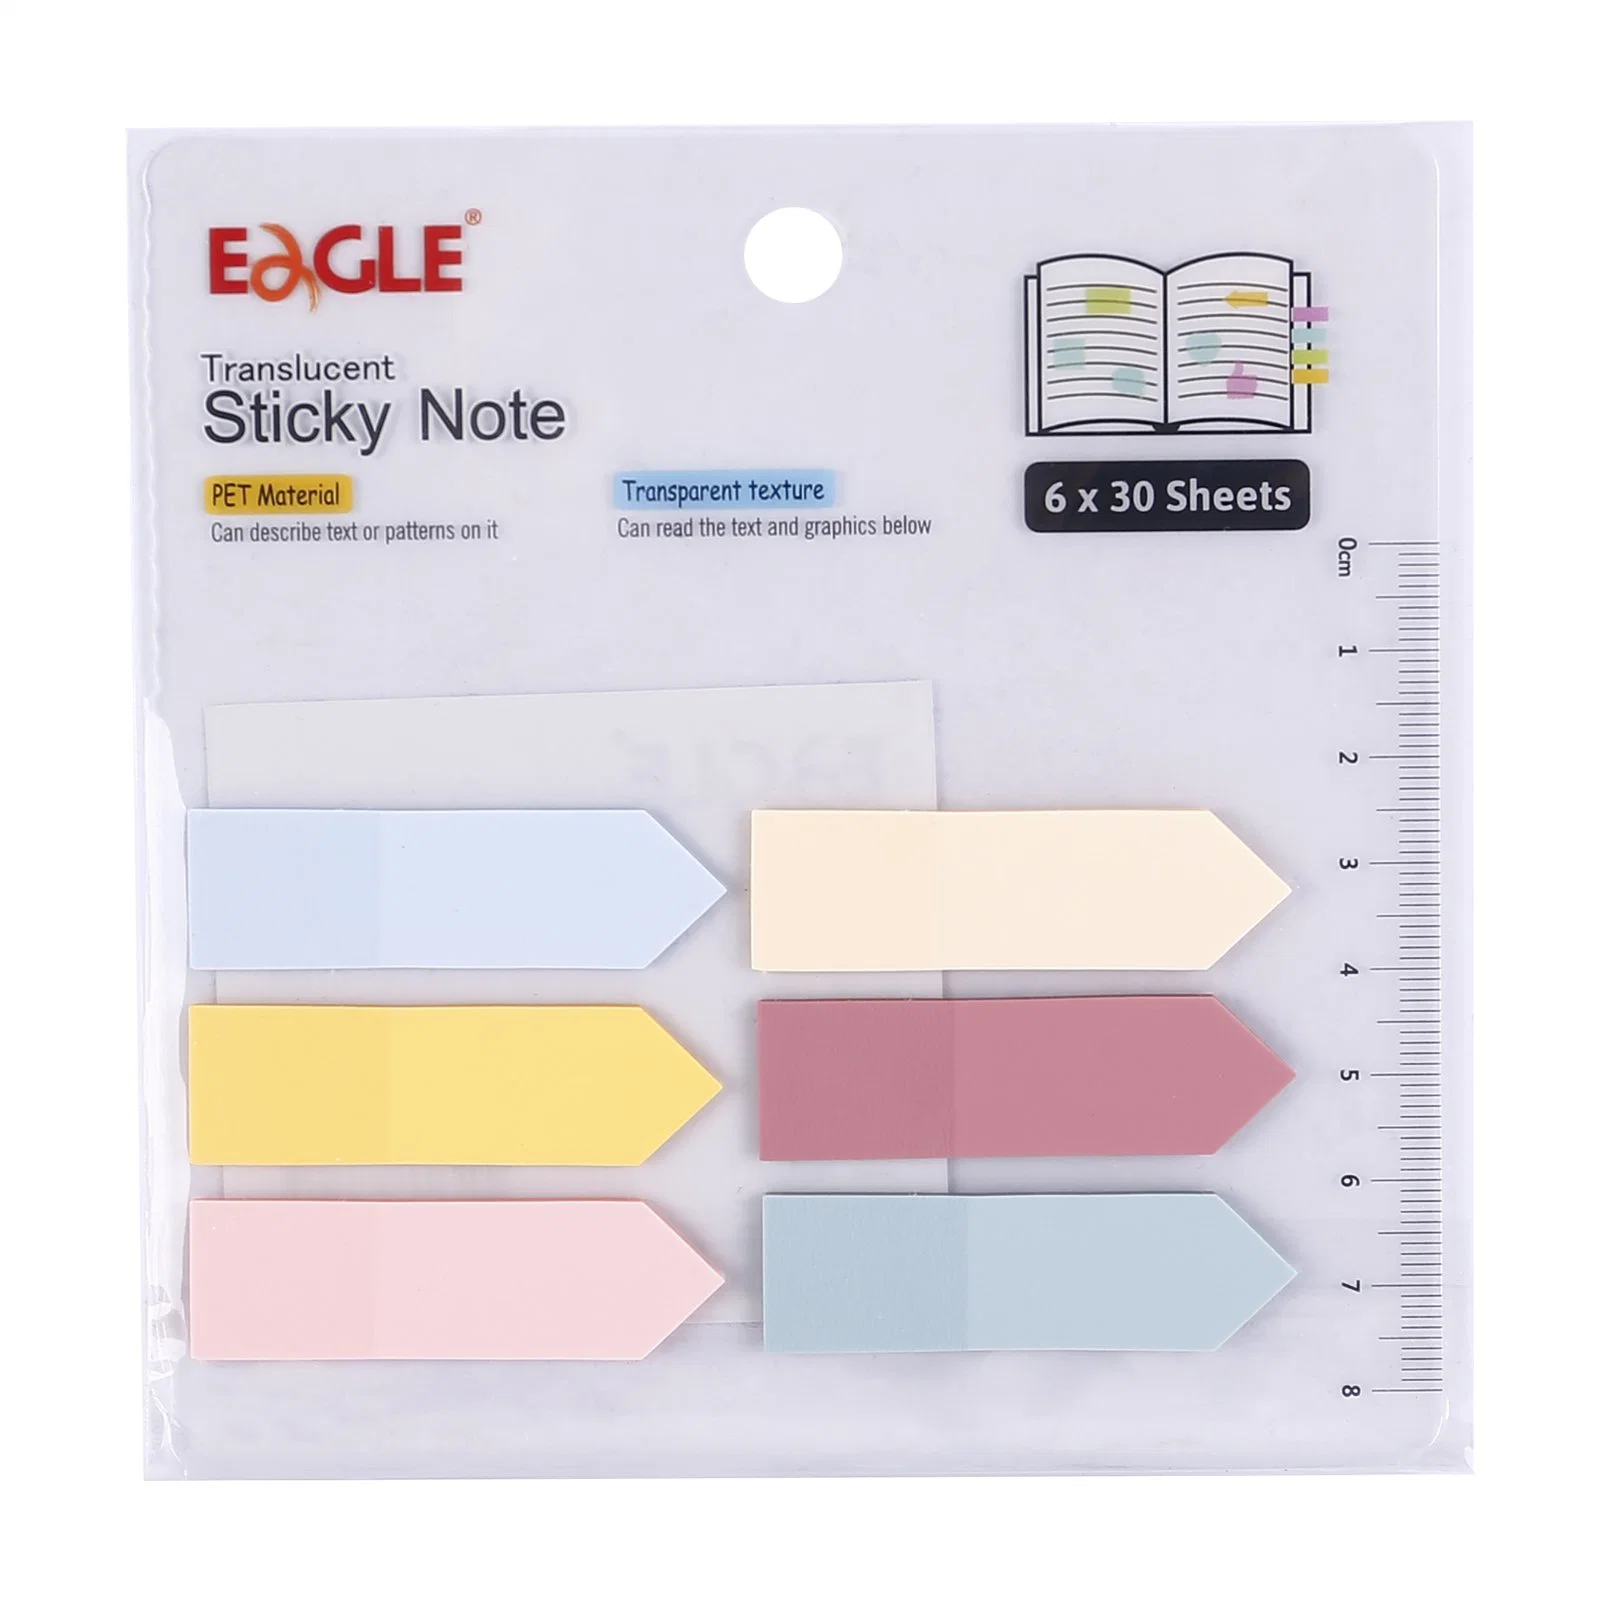 Eagle High Quality Sticky Notes Продукт 50*15 мм разделить Примечания для Офисные поставки